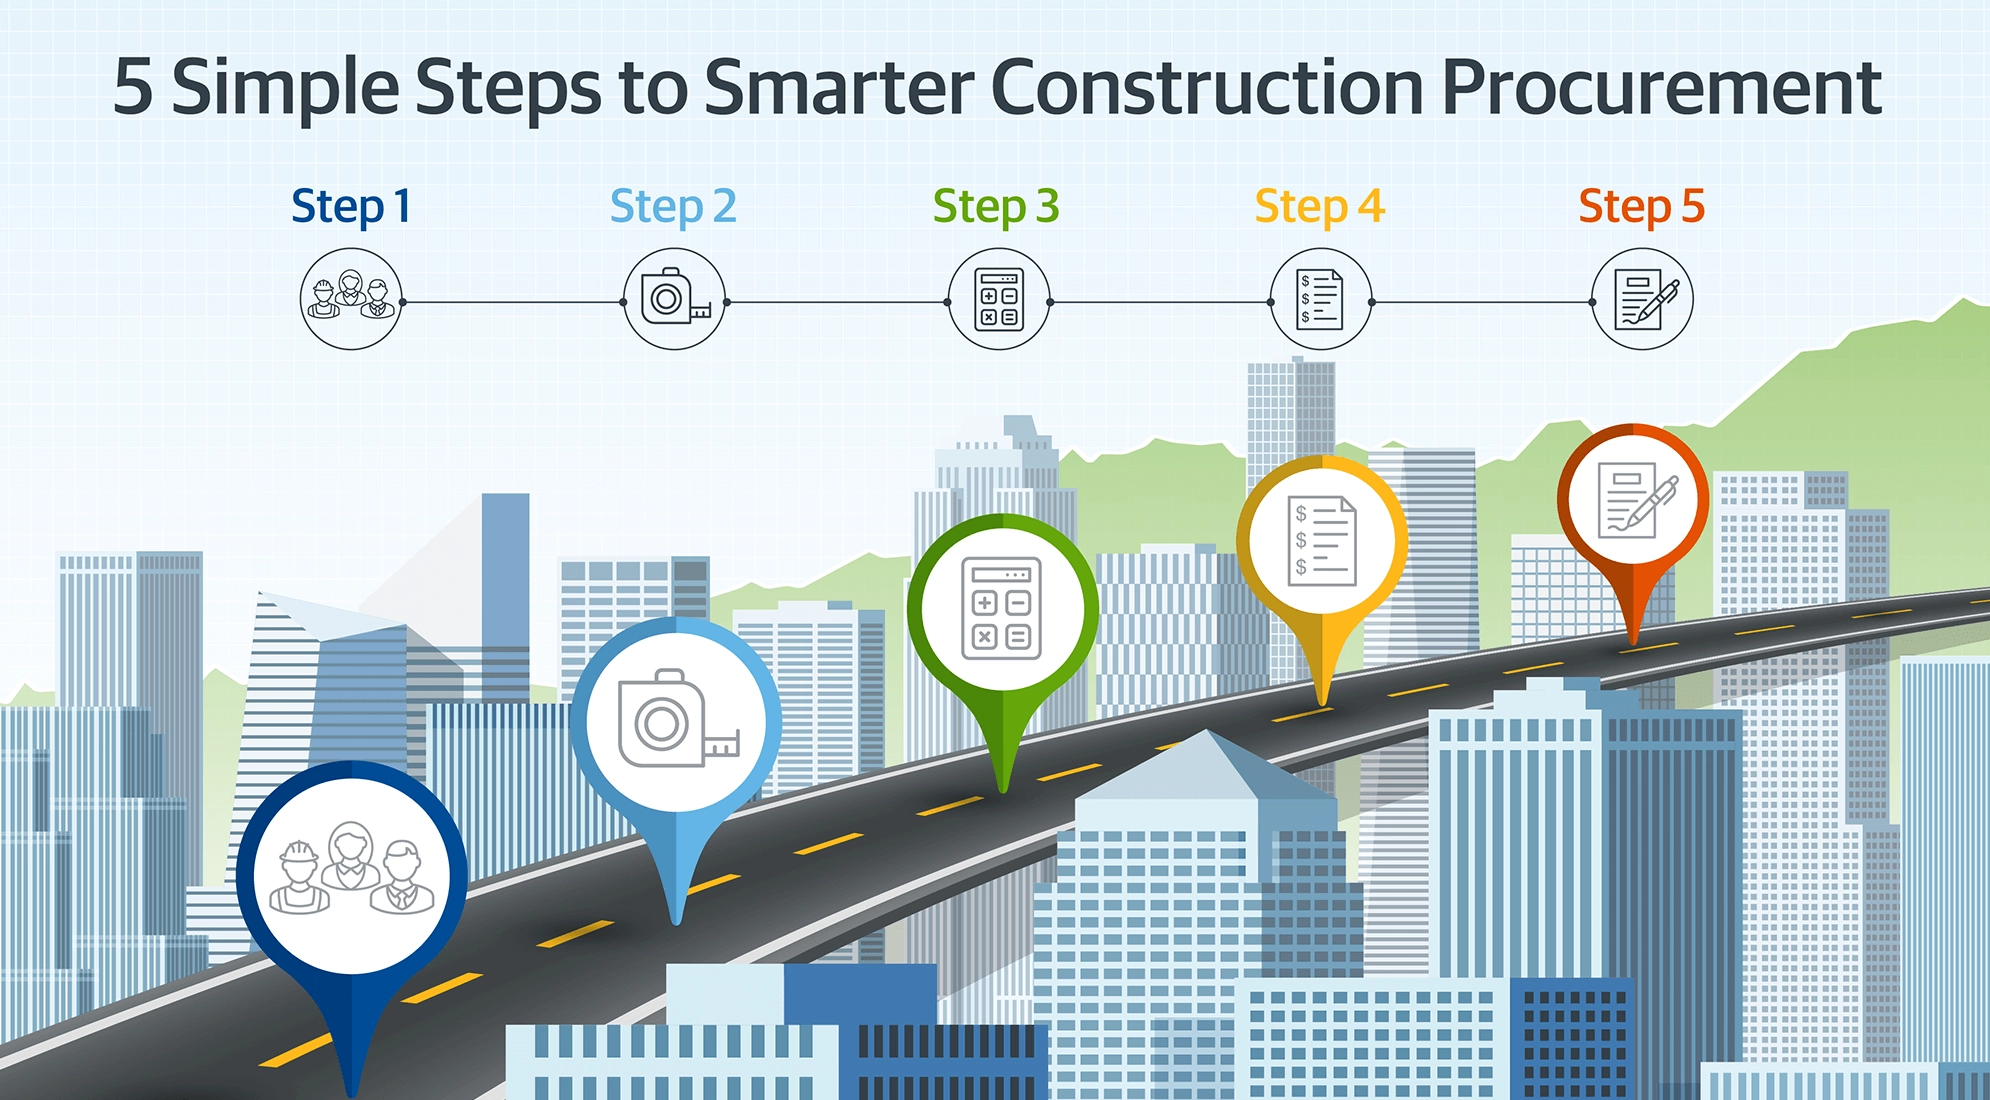 5 Simple Steps to Smarter Construction Procurement